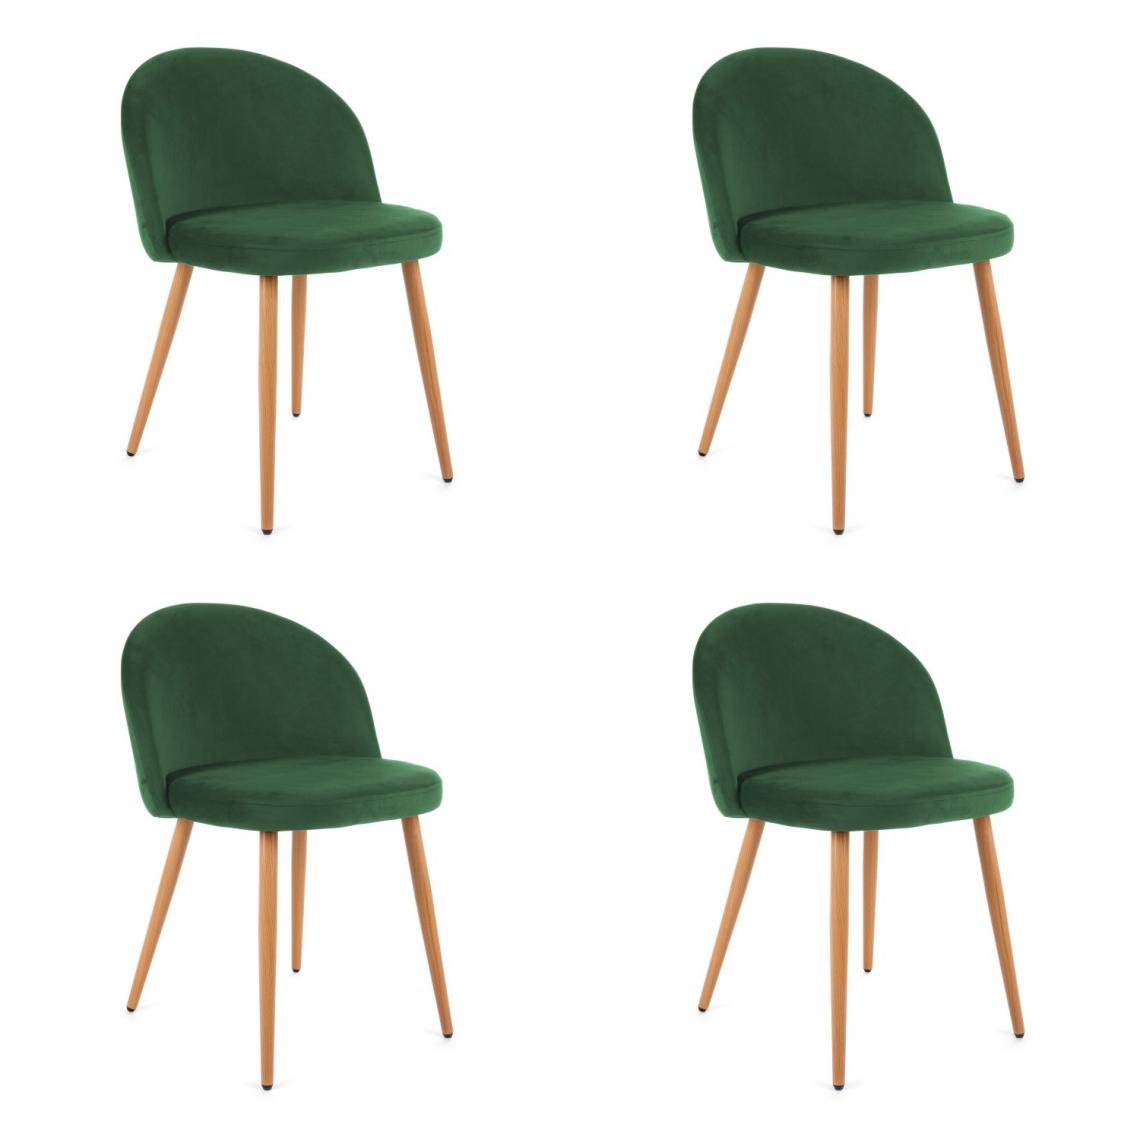 Hucoco - KARLI - Chaise rembourrée 4 pcs style moderne salon/salle à manger - 76x53x43 - Pieds en métal - Vert - Chaises